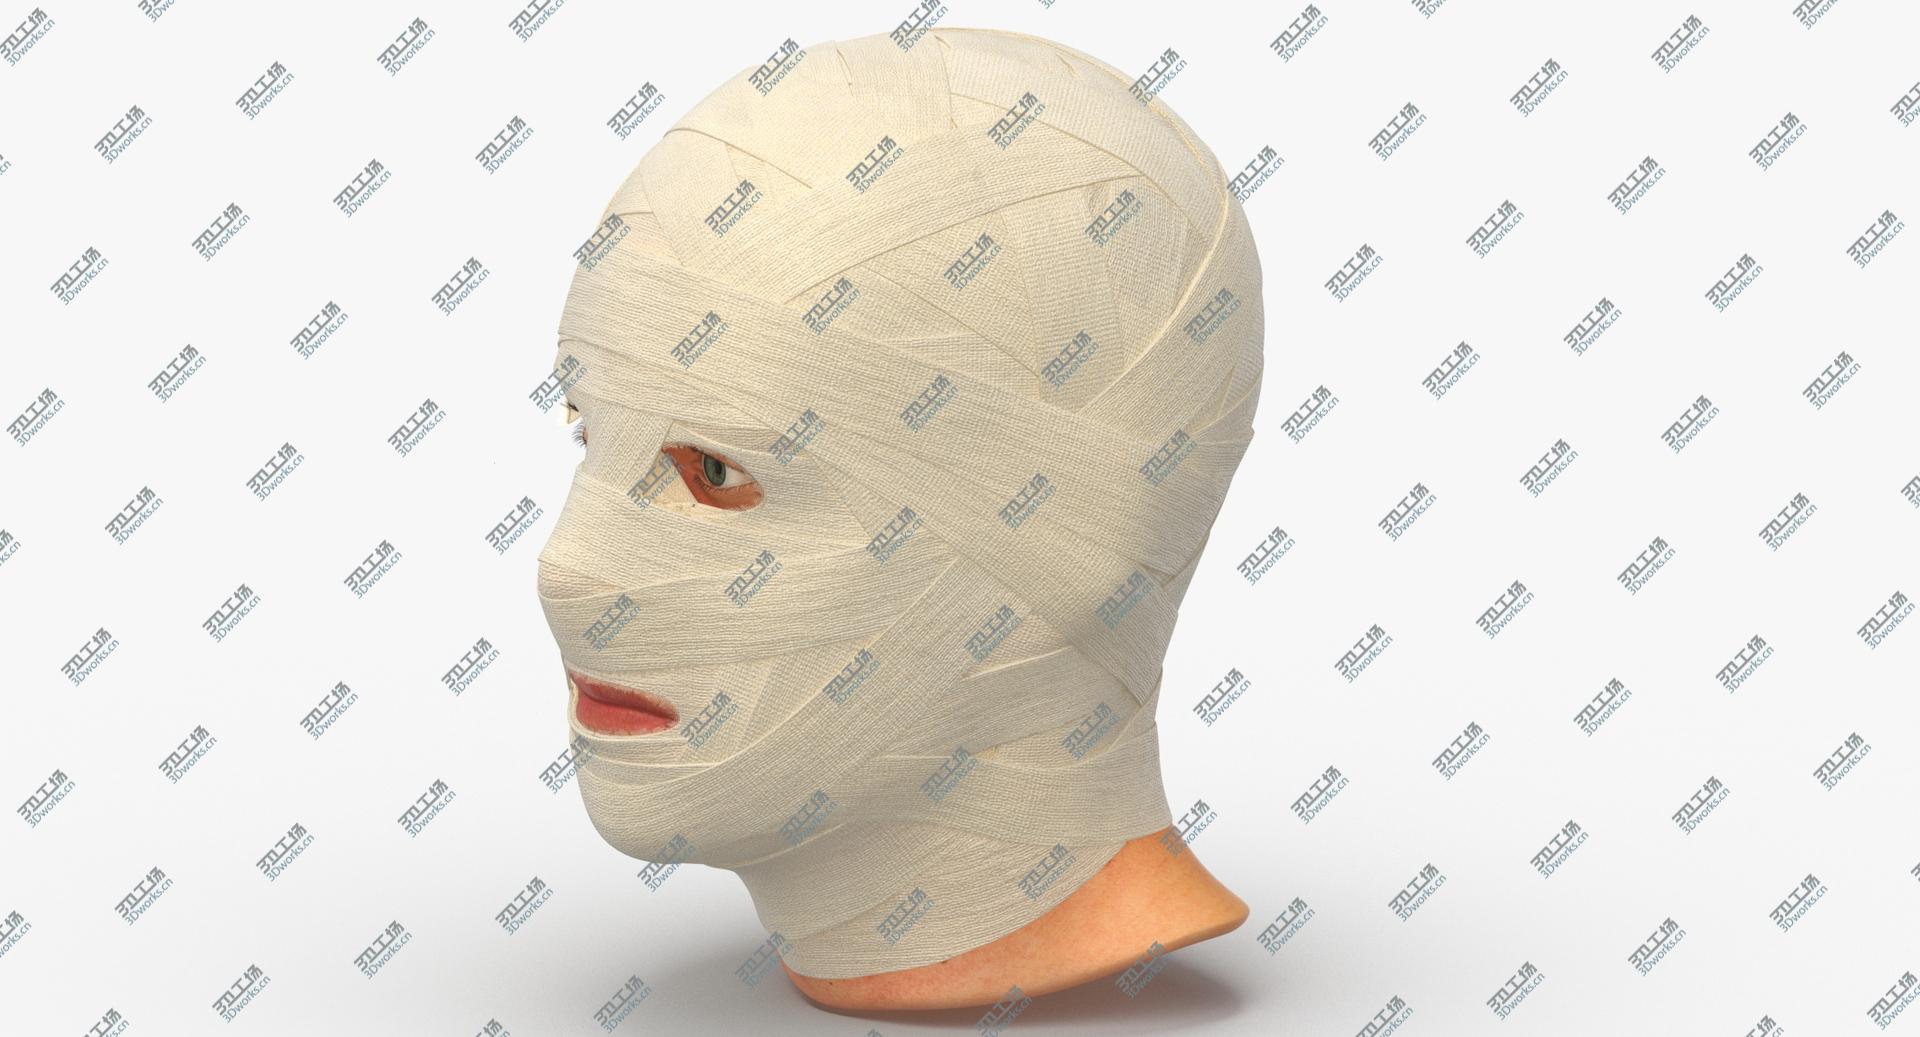 images/goods_img/202105071/3D Bandaged Head/5.jpg